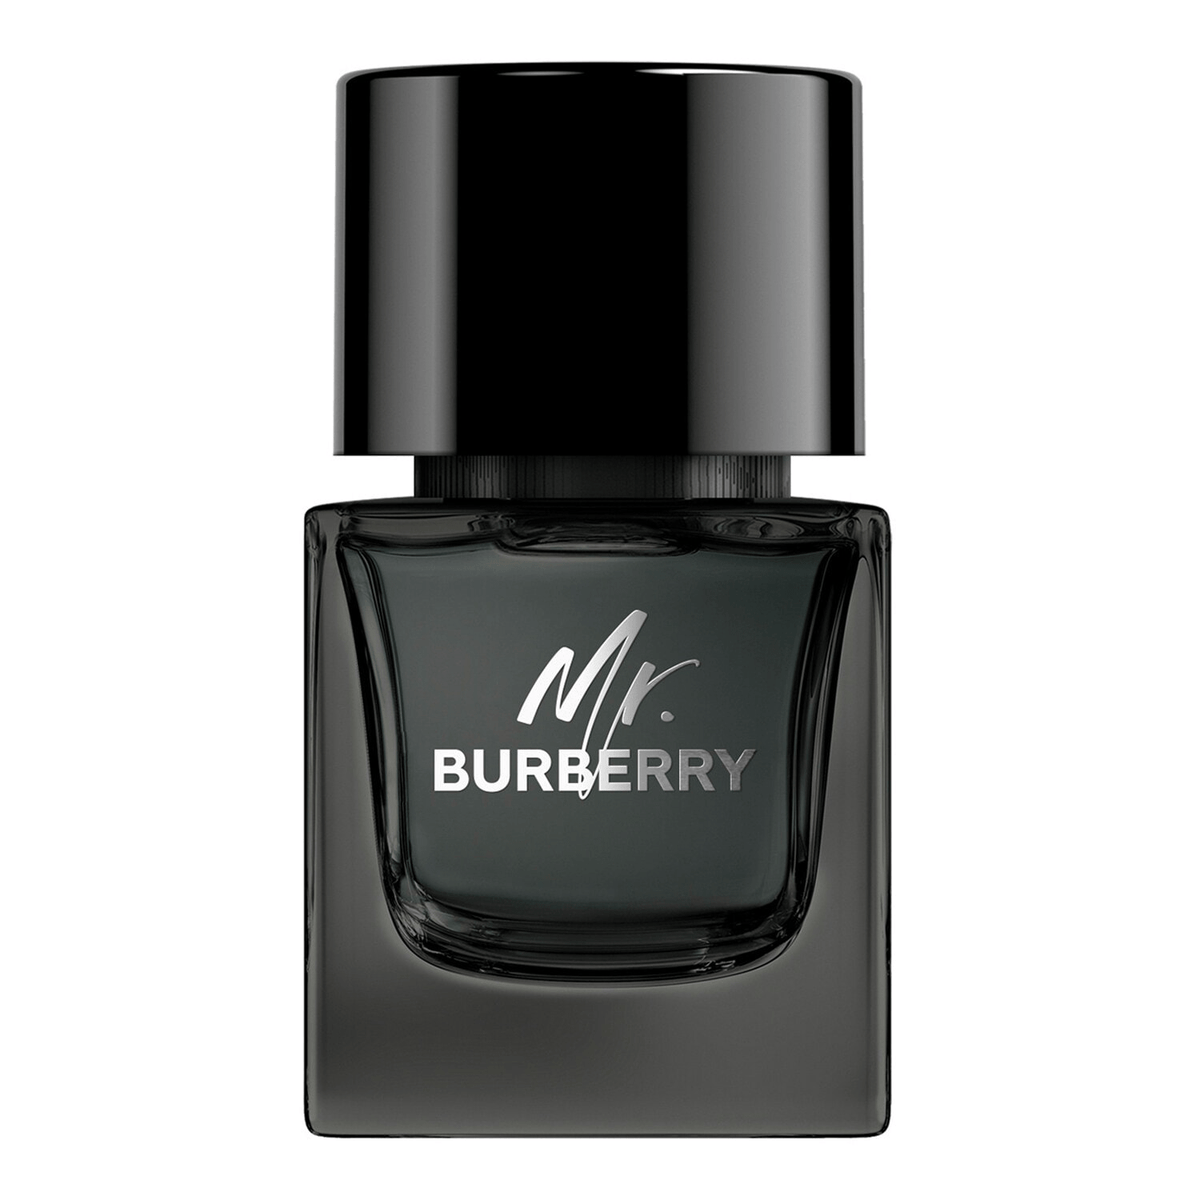 Mr. Burberry de Burberry